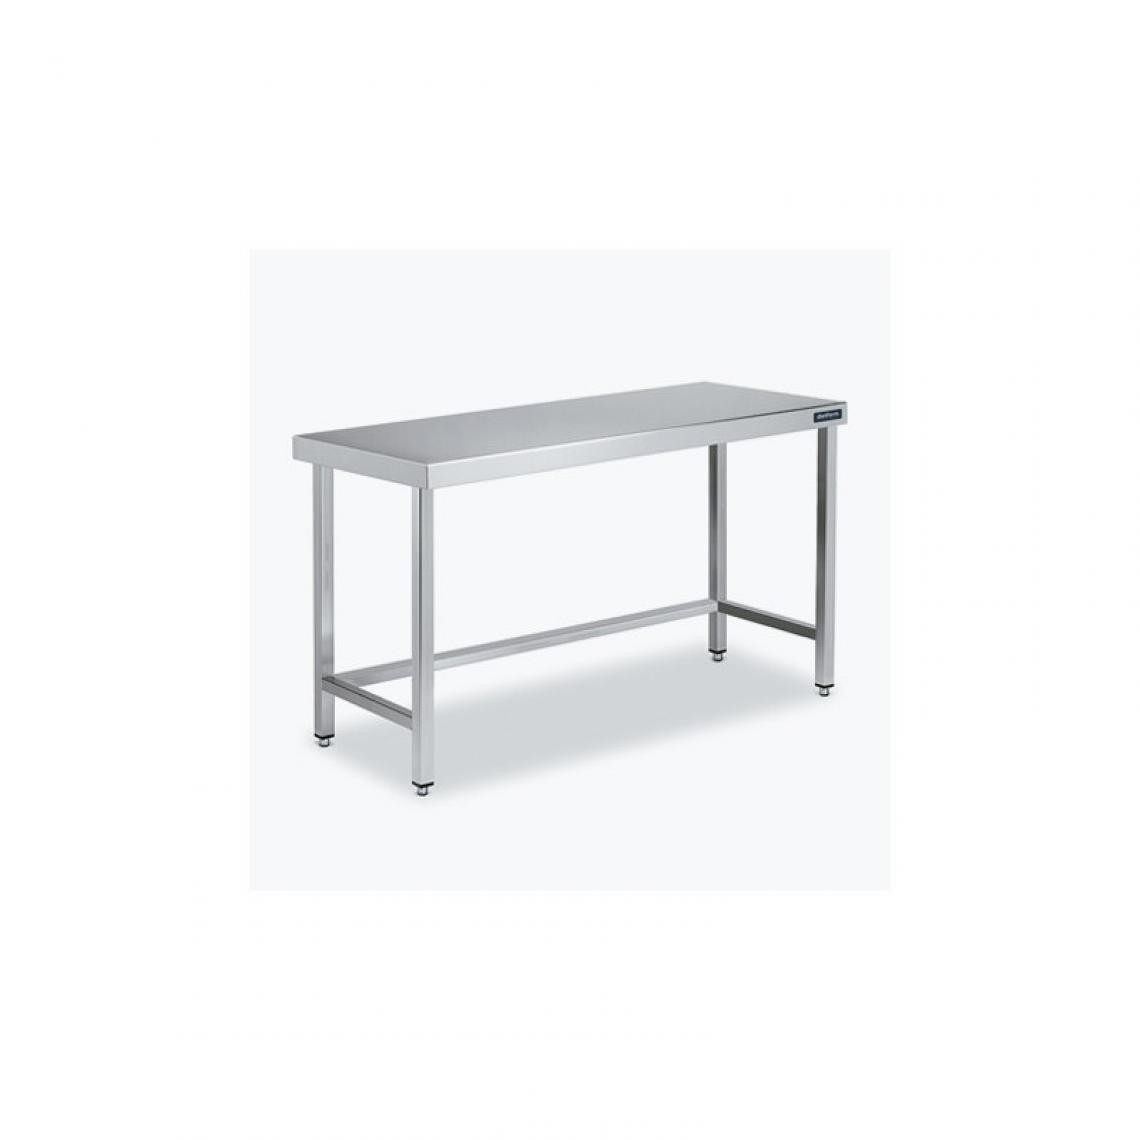 DISTFORM - Table Centrale 600x700 avec Renforts - Distform - Inox 18/101400x700x850mm - Tables à manger